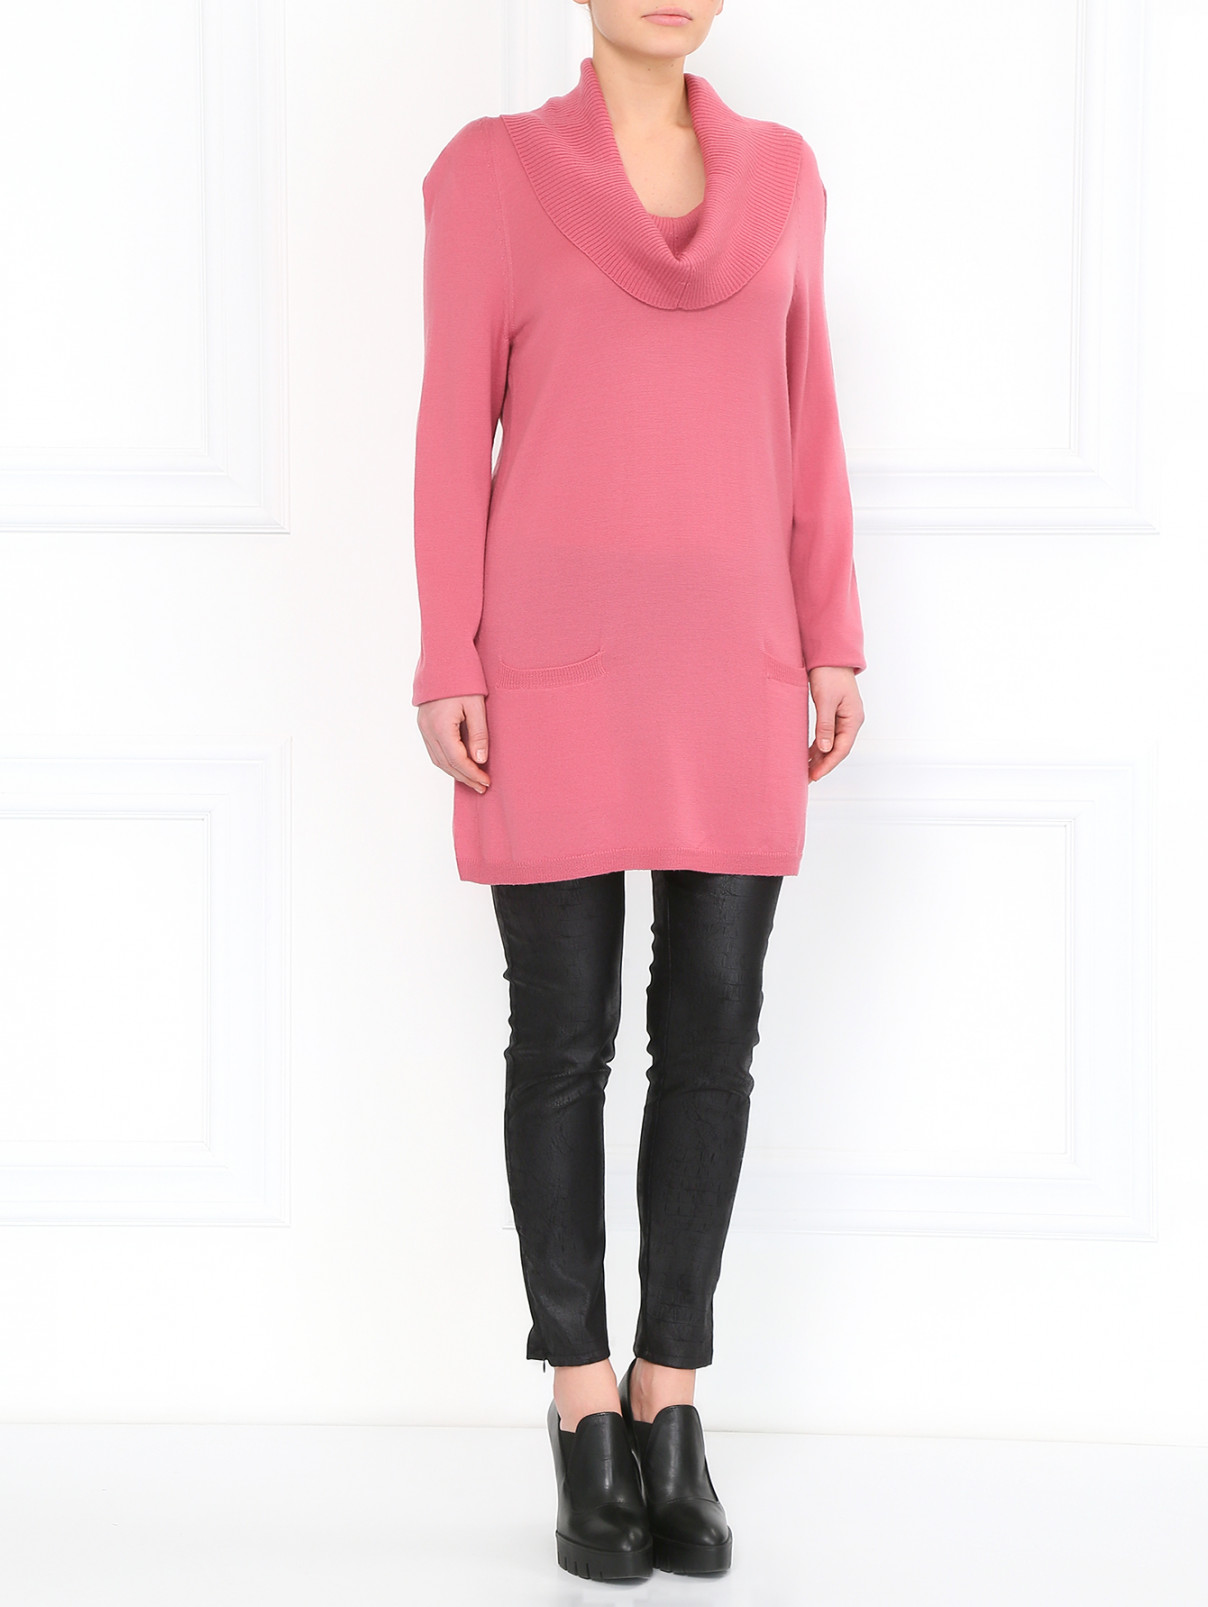 Джемпер из шерсти с боковыми карманами Moschino Cheap&Chic  –  Модель Общий вид  – Цвет:  Розовый